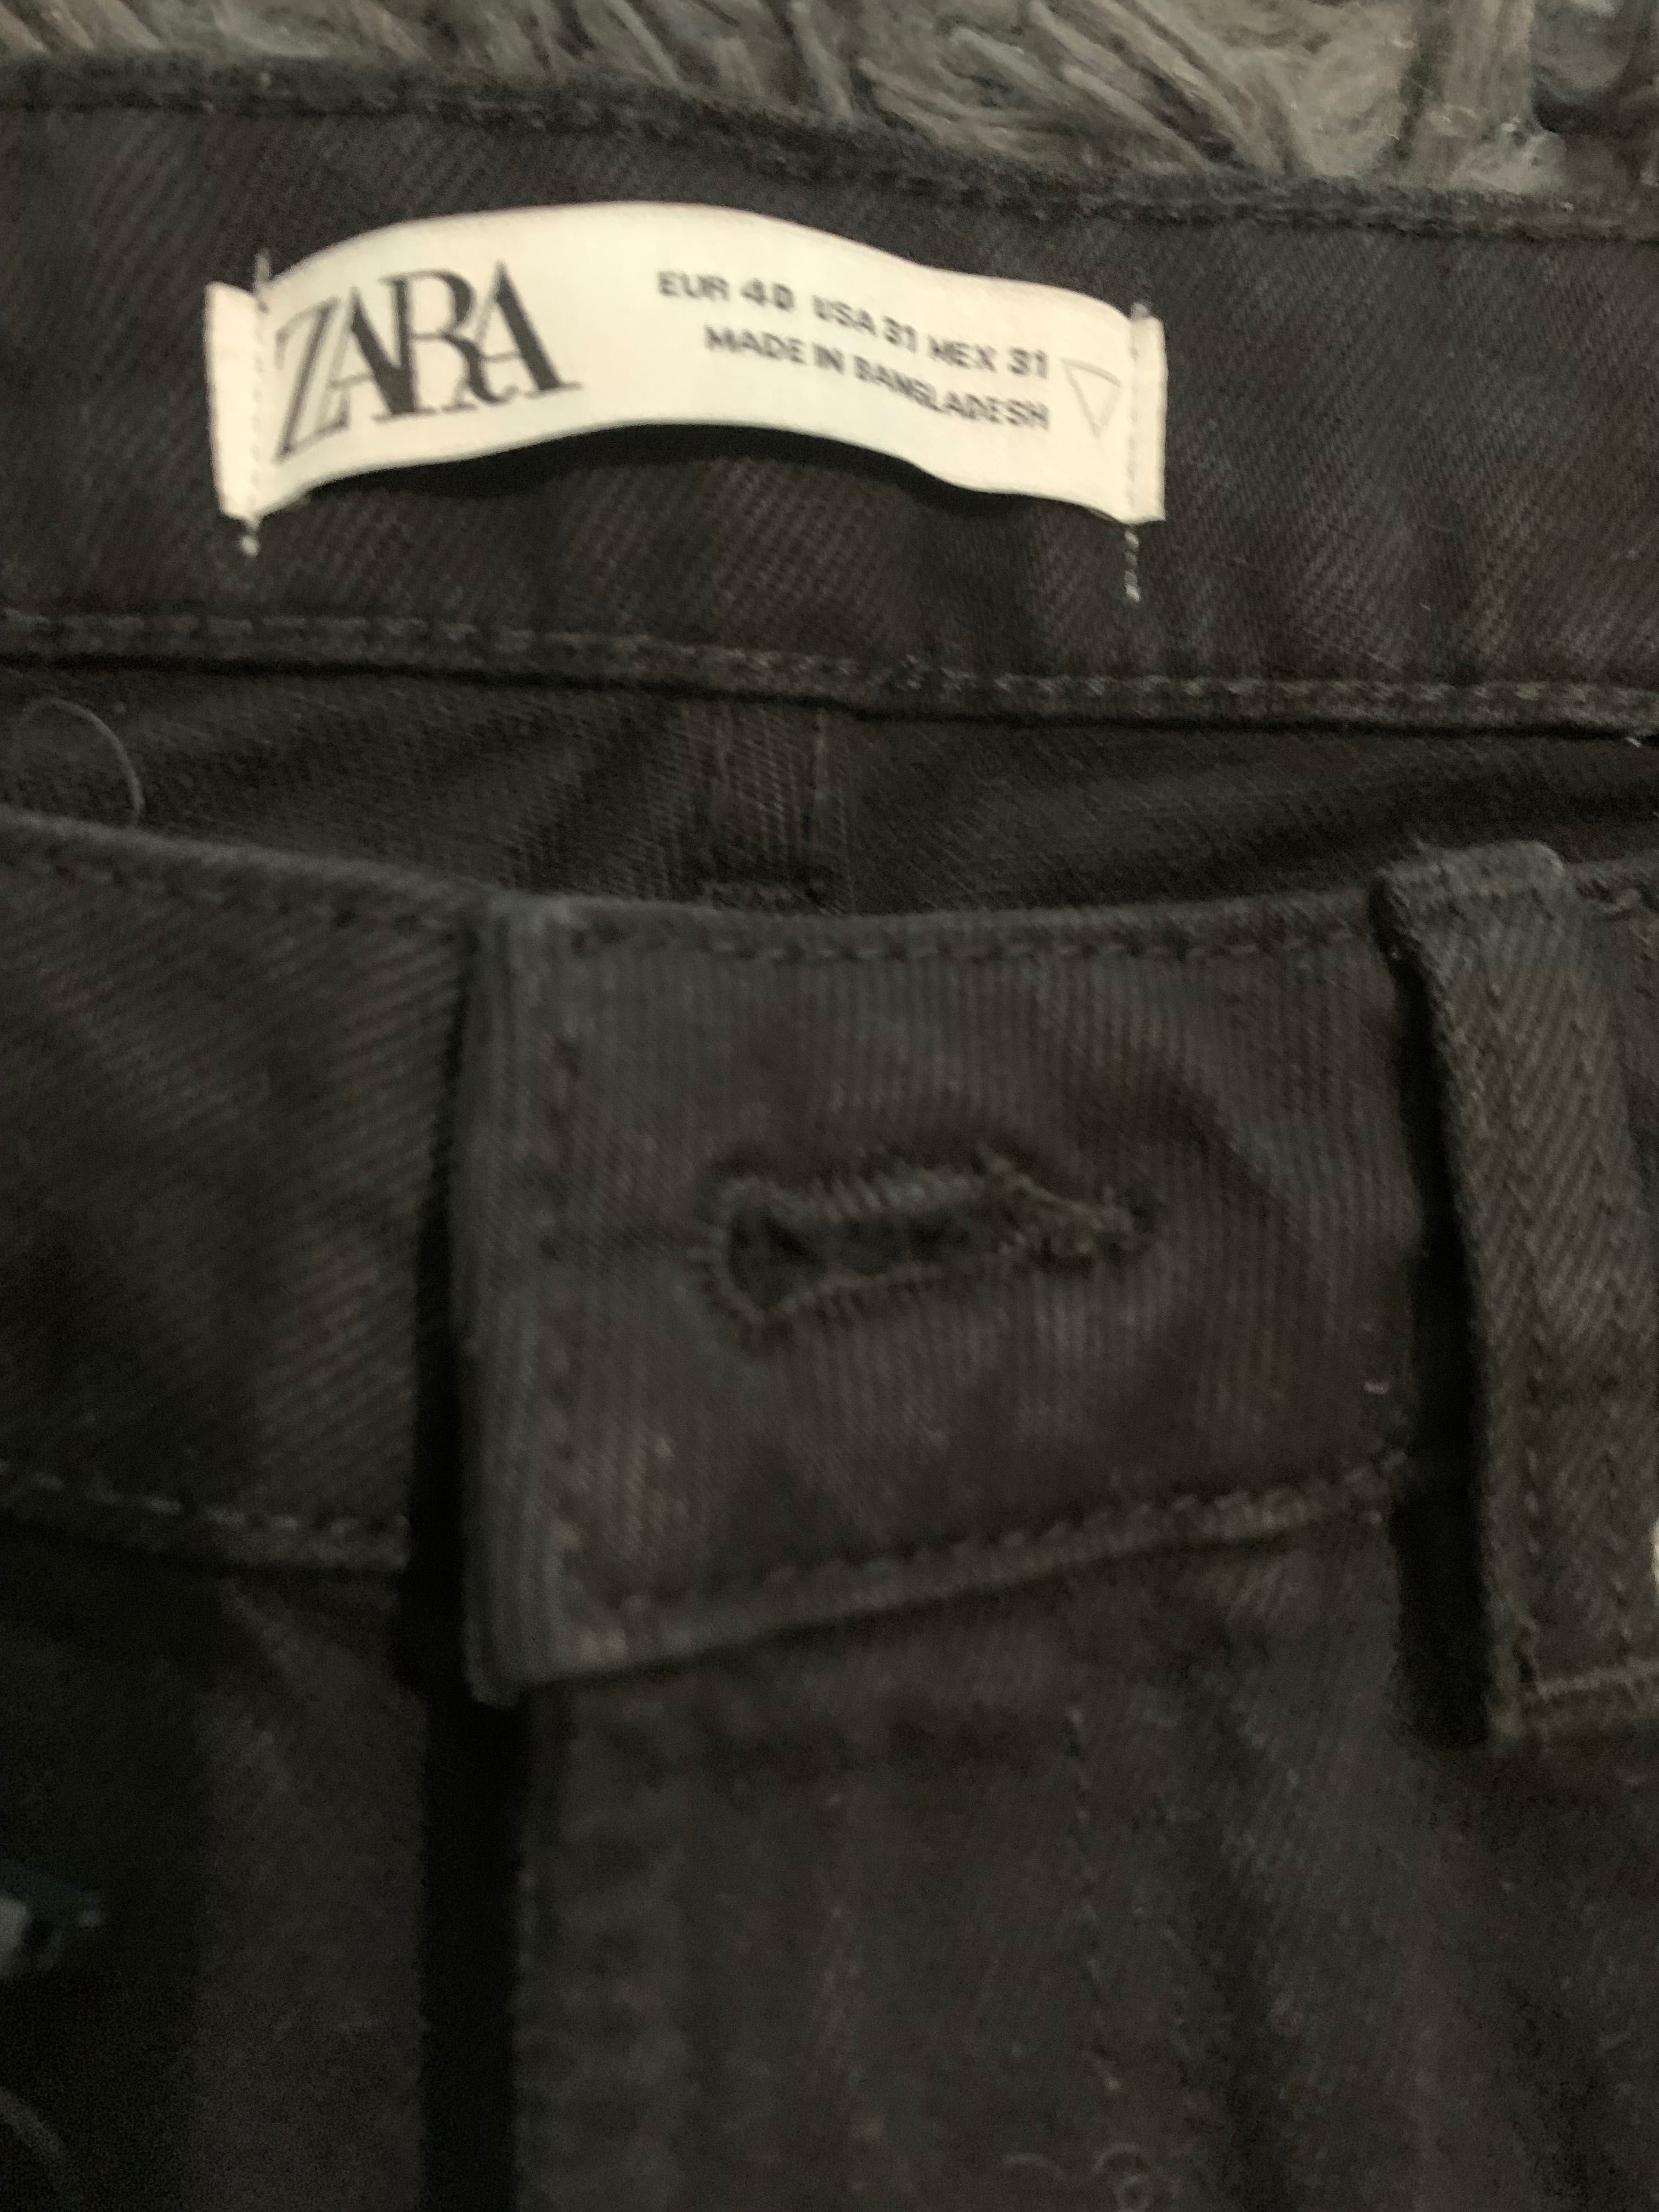 Czarne krótkie spodnie ZARA 40 jeans męskie